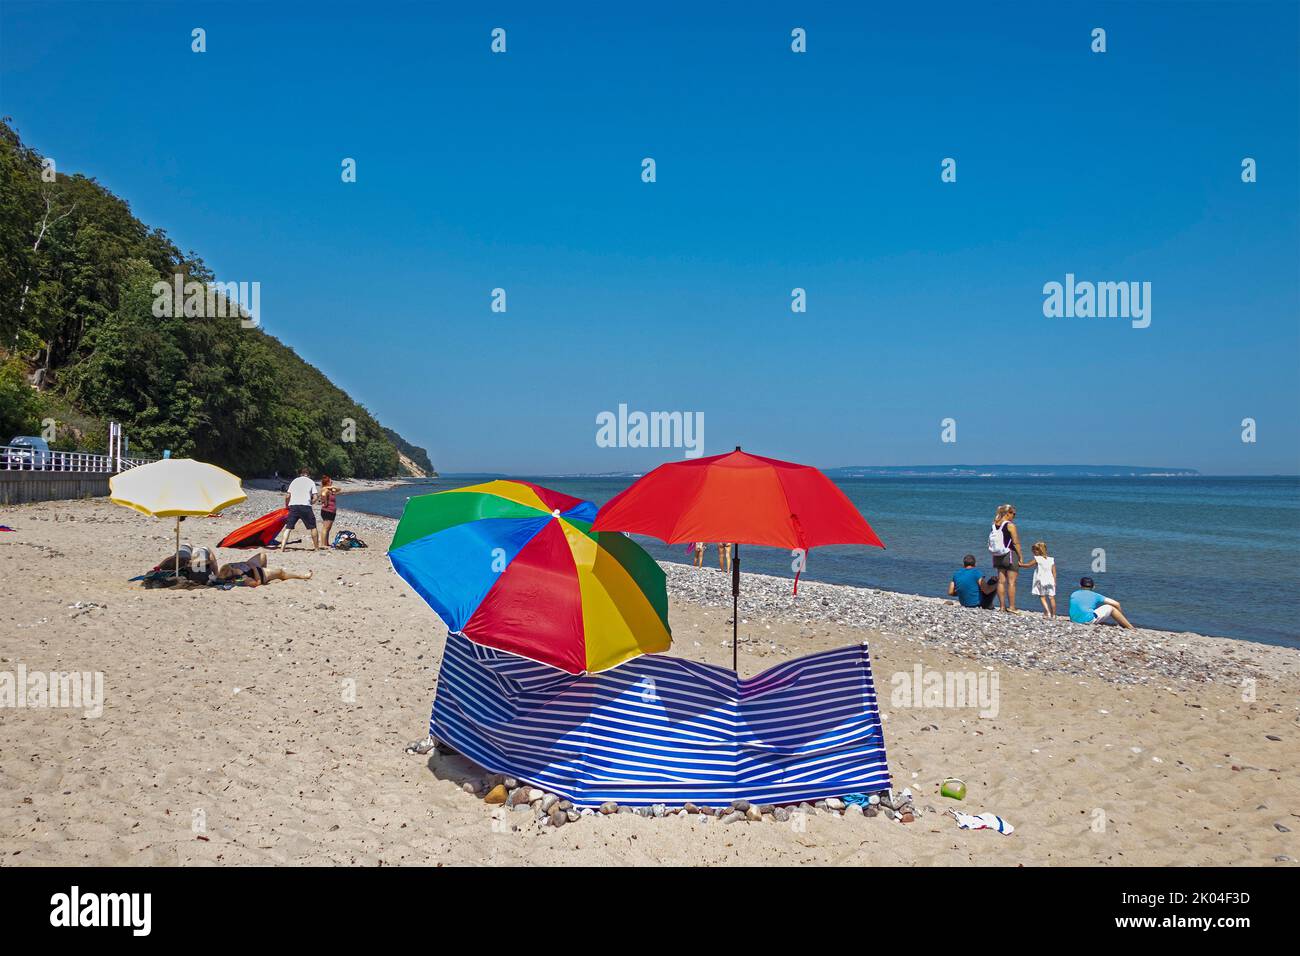 Ombrelloni, parabrezza, spiaggia, Sellin, Isola di Rügen, Meclemburgo-Pomerania occidentale, Germania Foto Stock